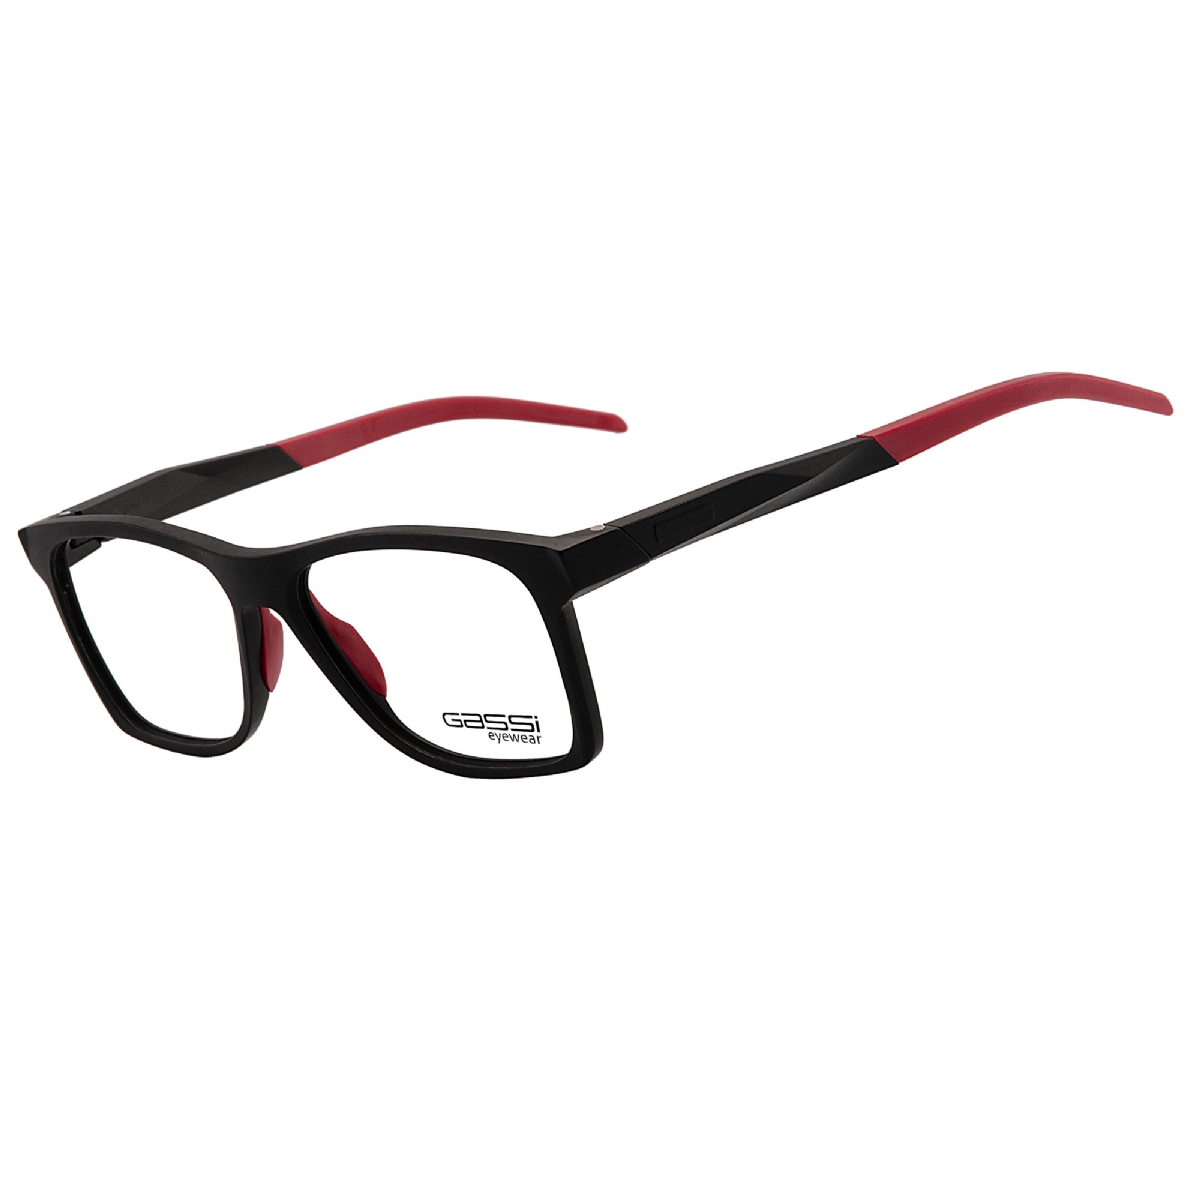 Óculos de grau Gassi Luke - Preto/ Vermelho